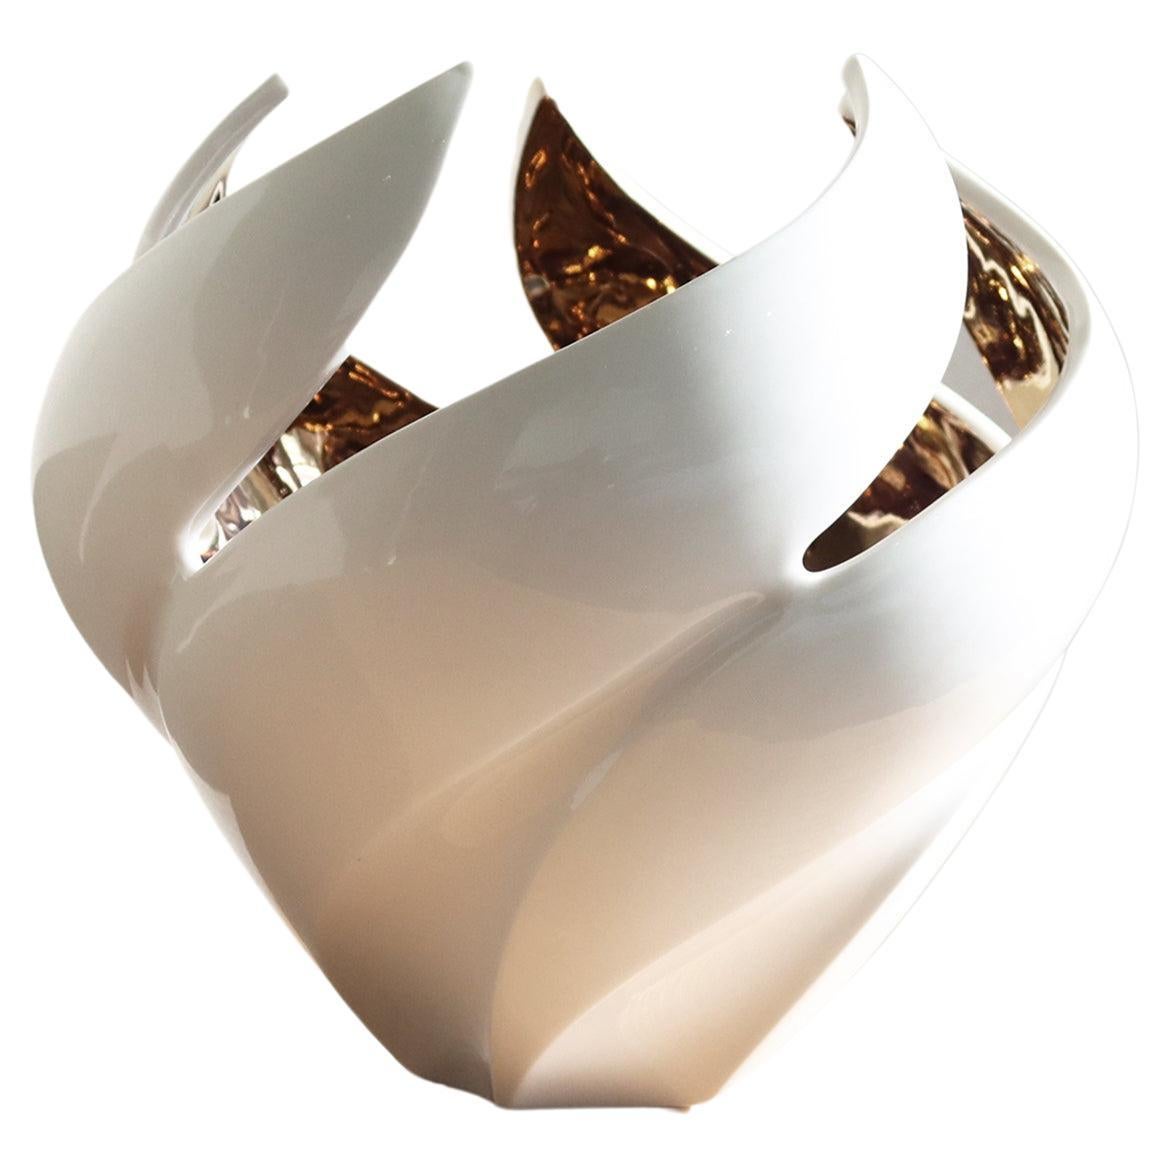 Das Twisted Vessel ist ein exquisites Kunstwerk, das die Spontaneität und Schönheit der Natur einfängt. Ob als skulpturales Meisterwerk oder als funktionale Vase für Ihre Lieblingsblumen, dieses Gefäß verleiht jedem Raum einen Hauch von